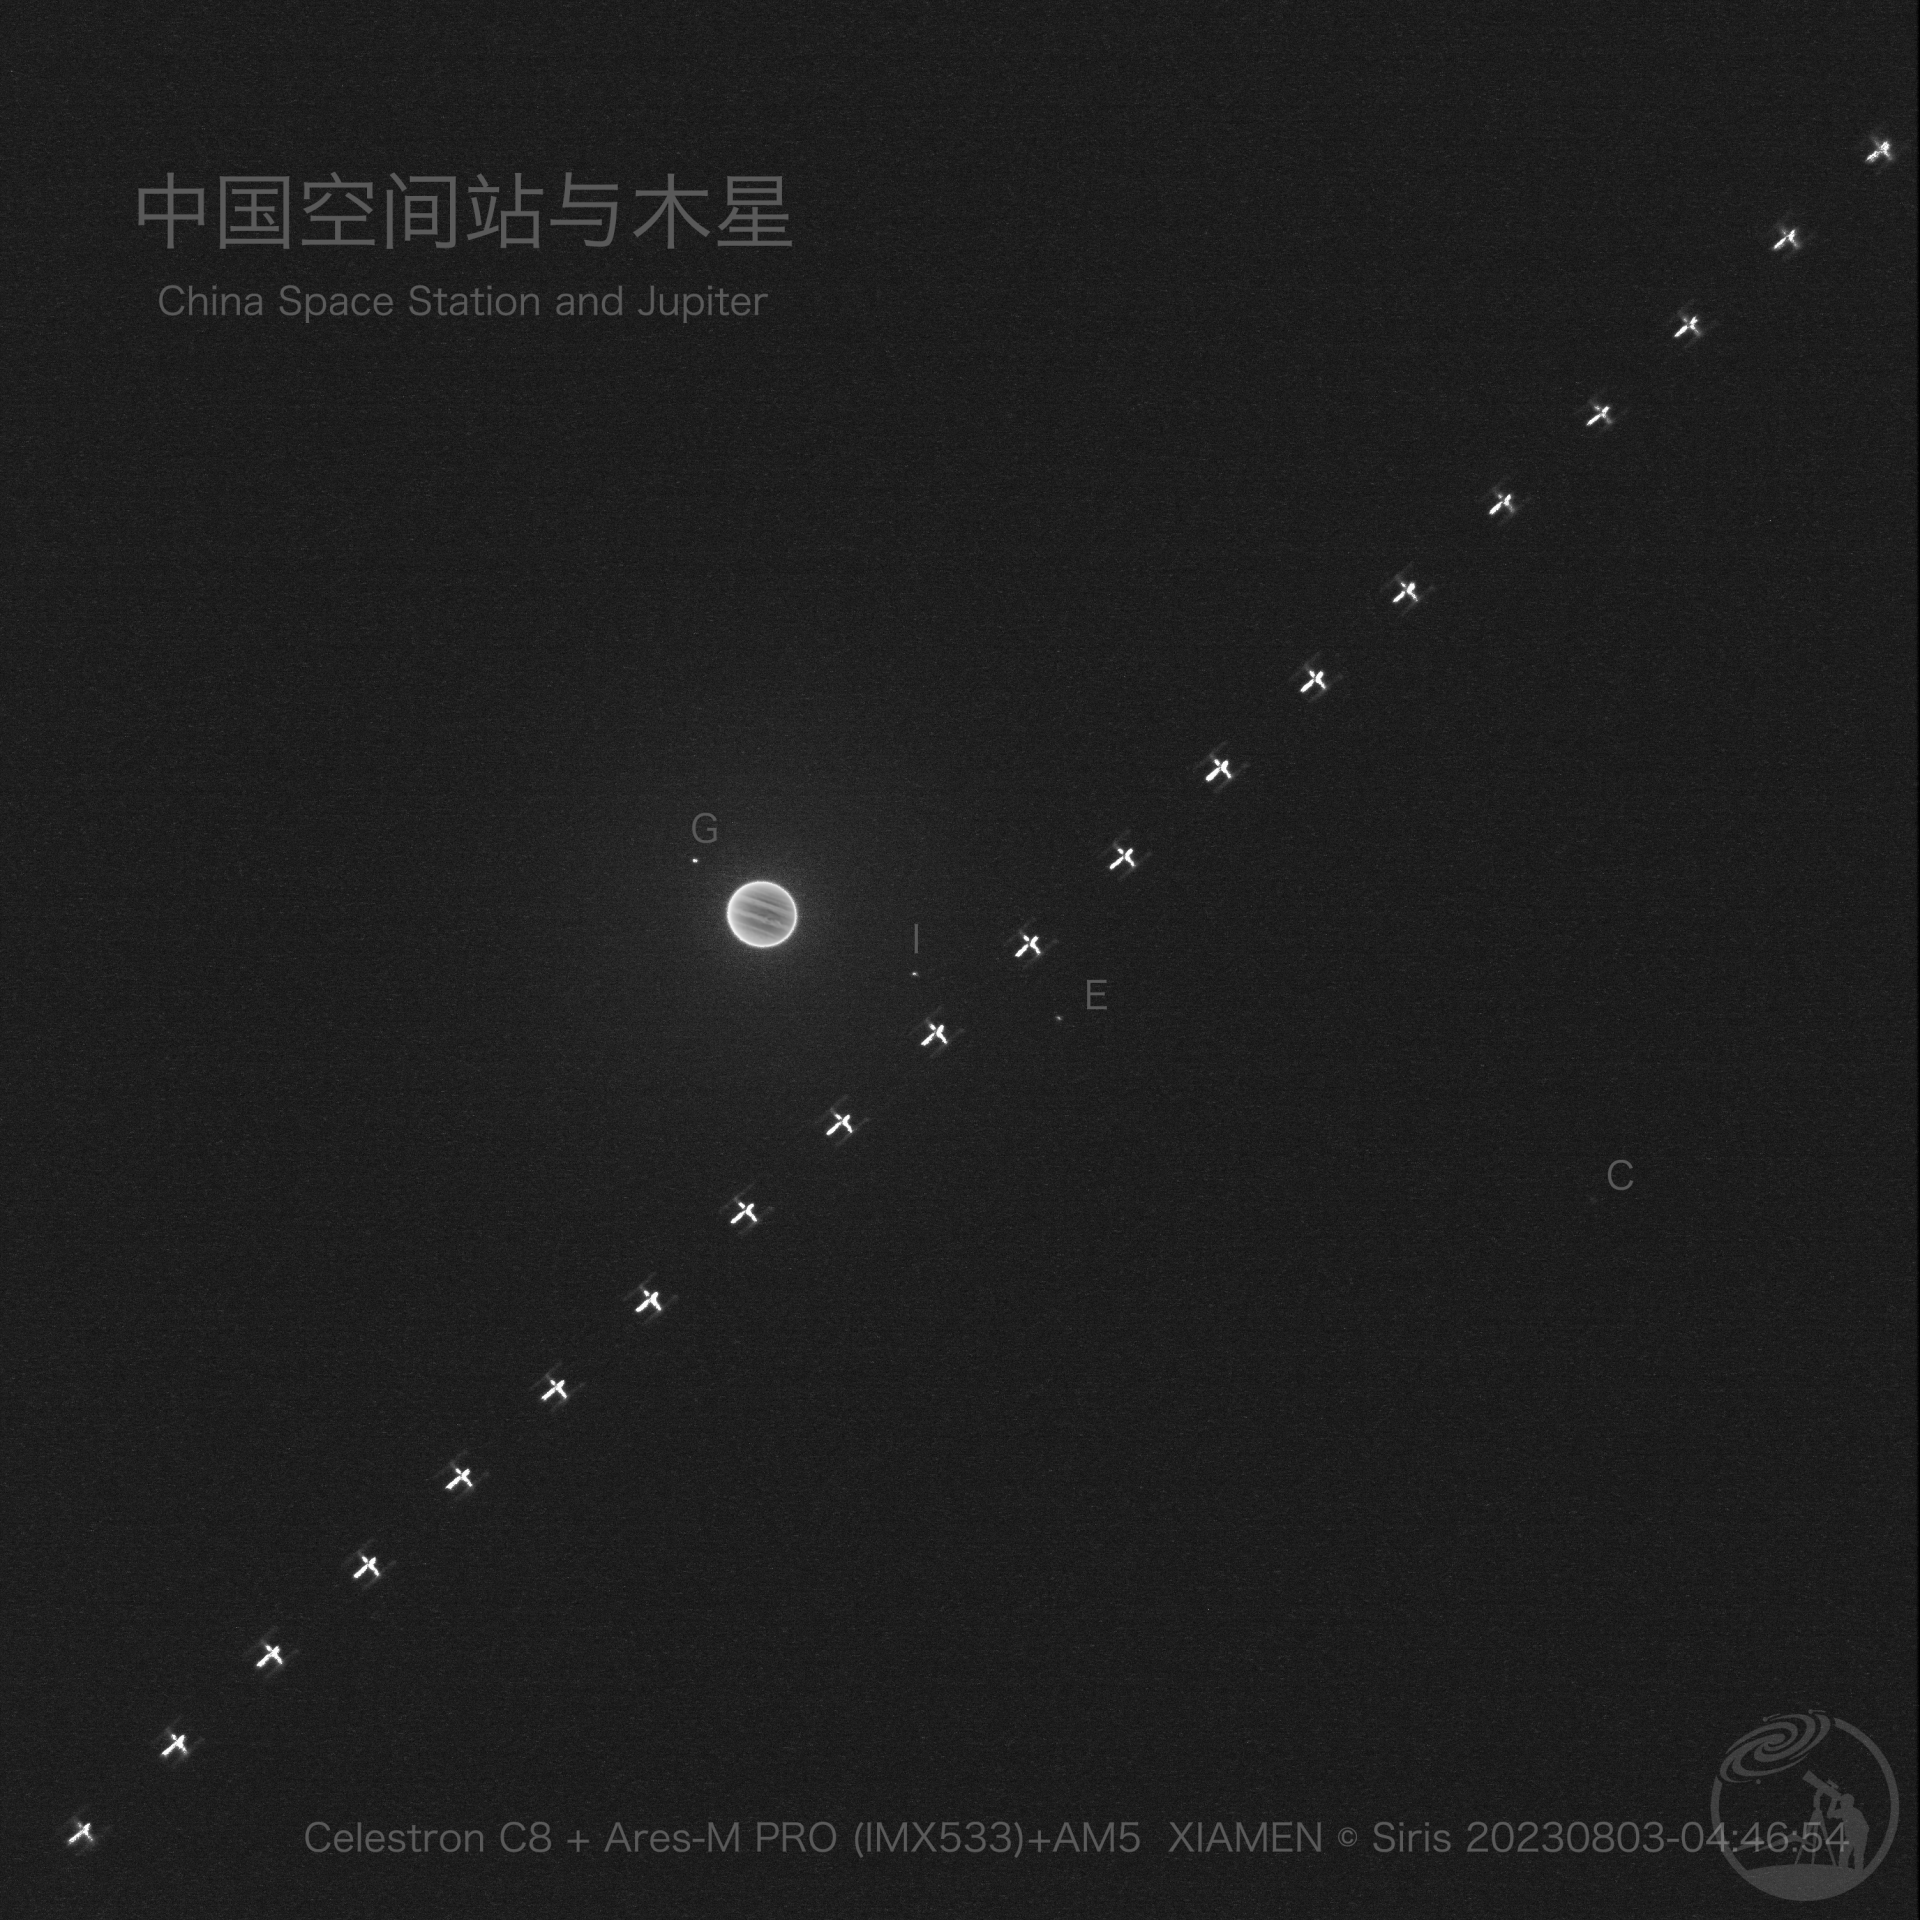 中国空间站与木星系统同框